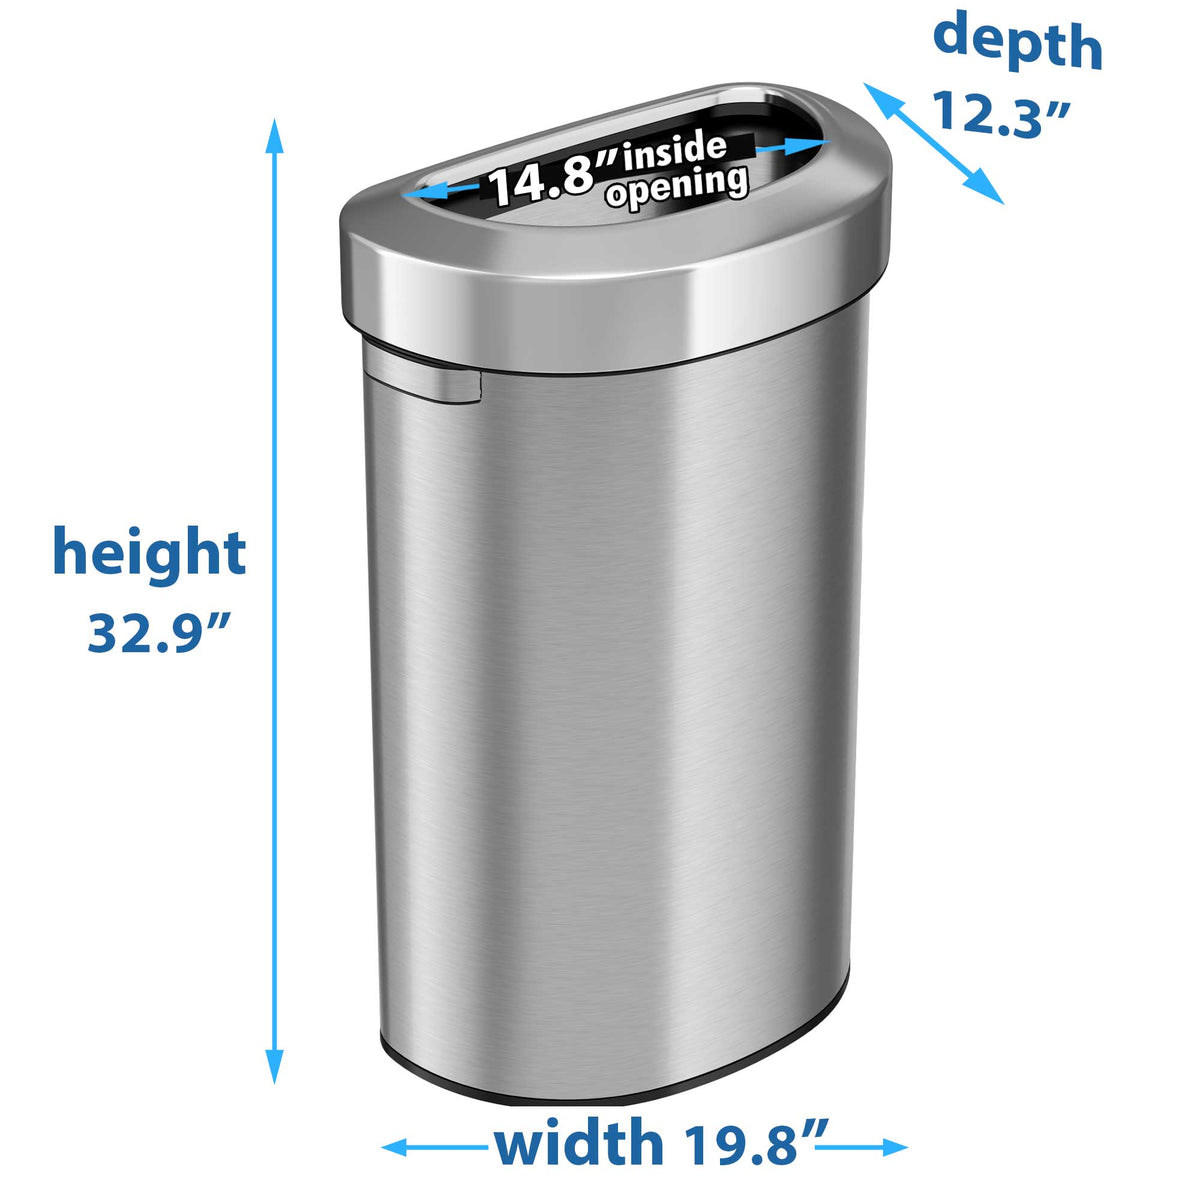 23 Gallon / 87 Liter Semi-Round Open Top Trash Can dimensions